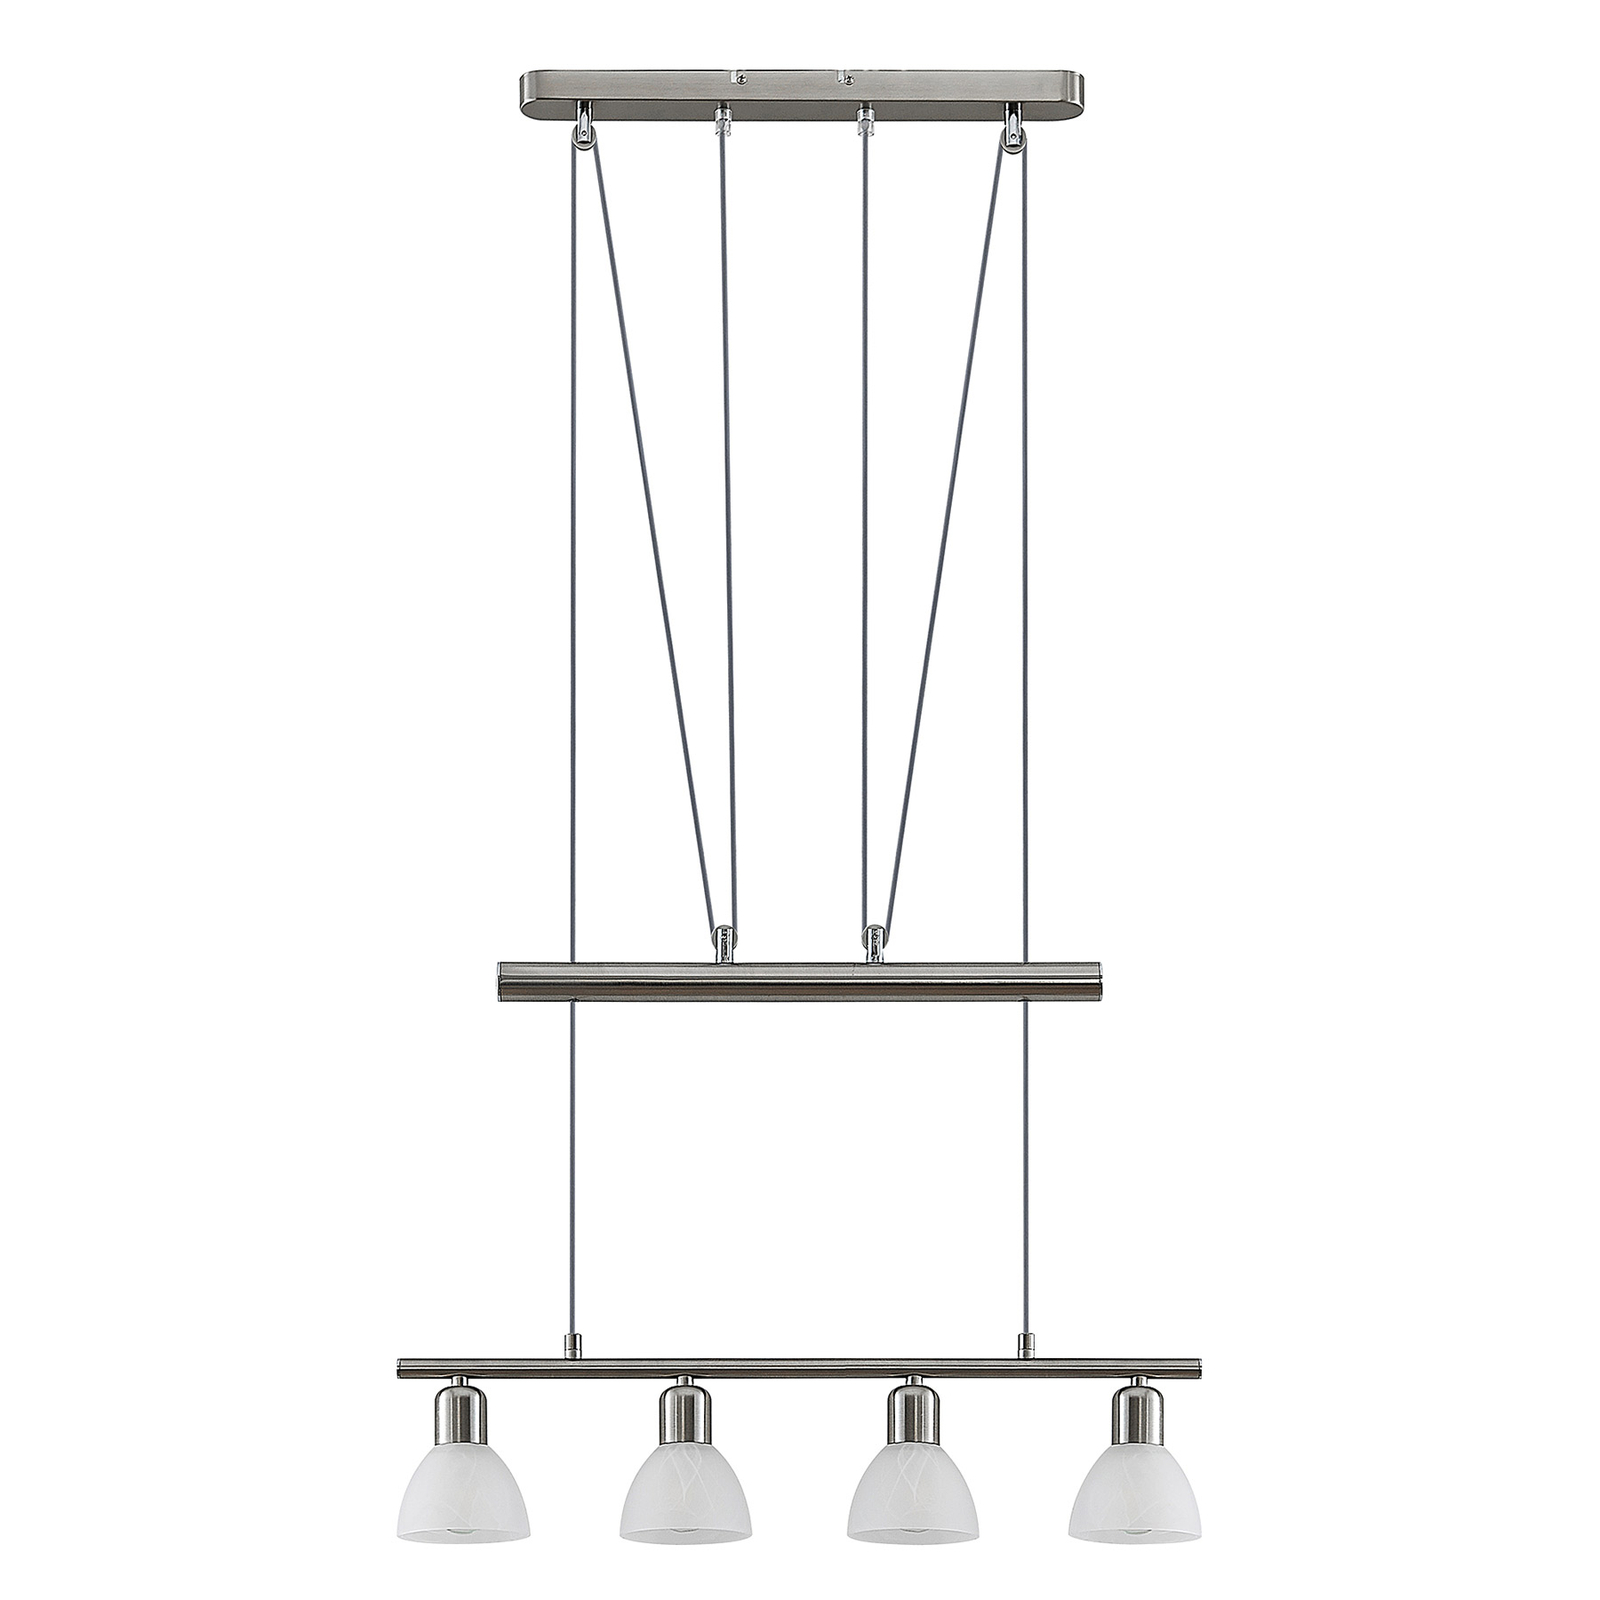 ELC Javari linear pendant light, height-adjustable